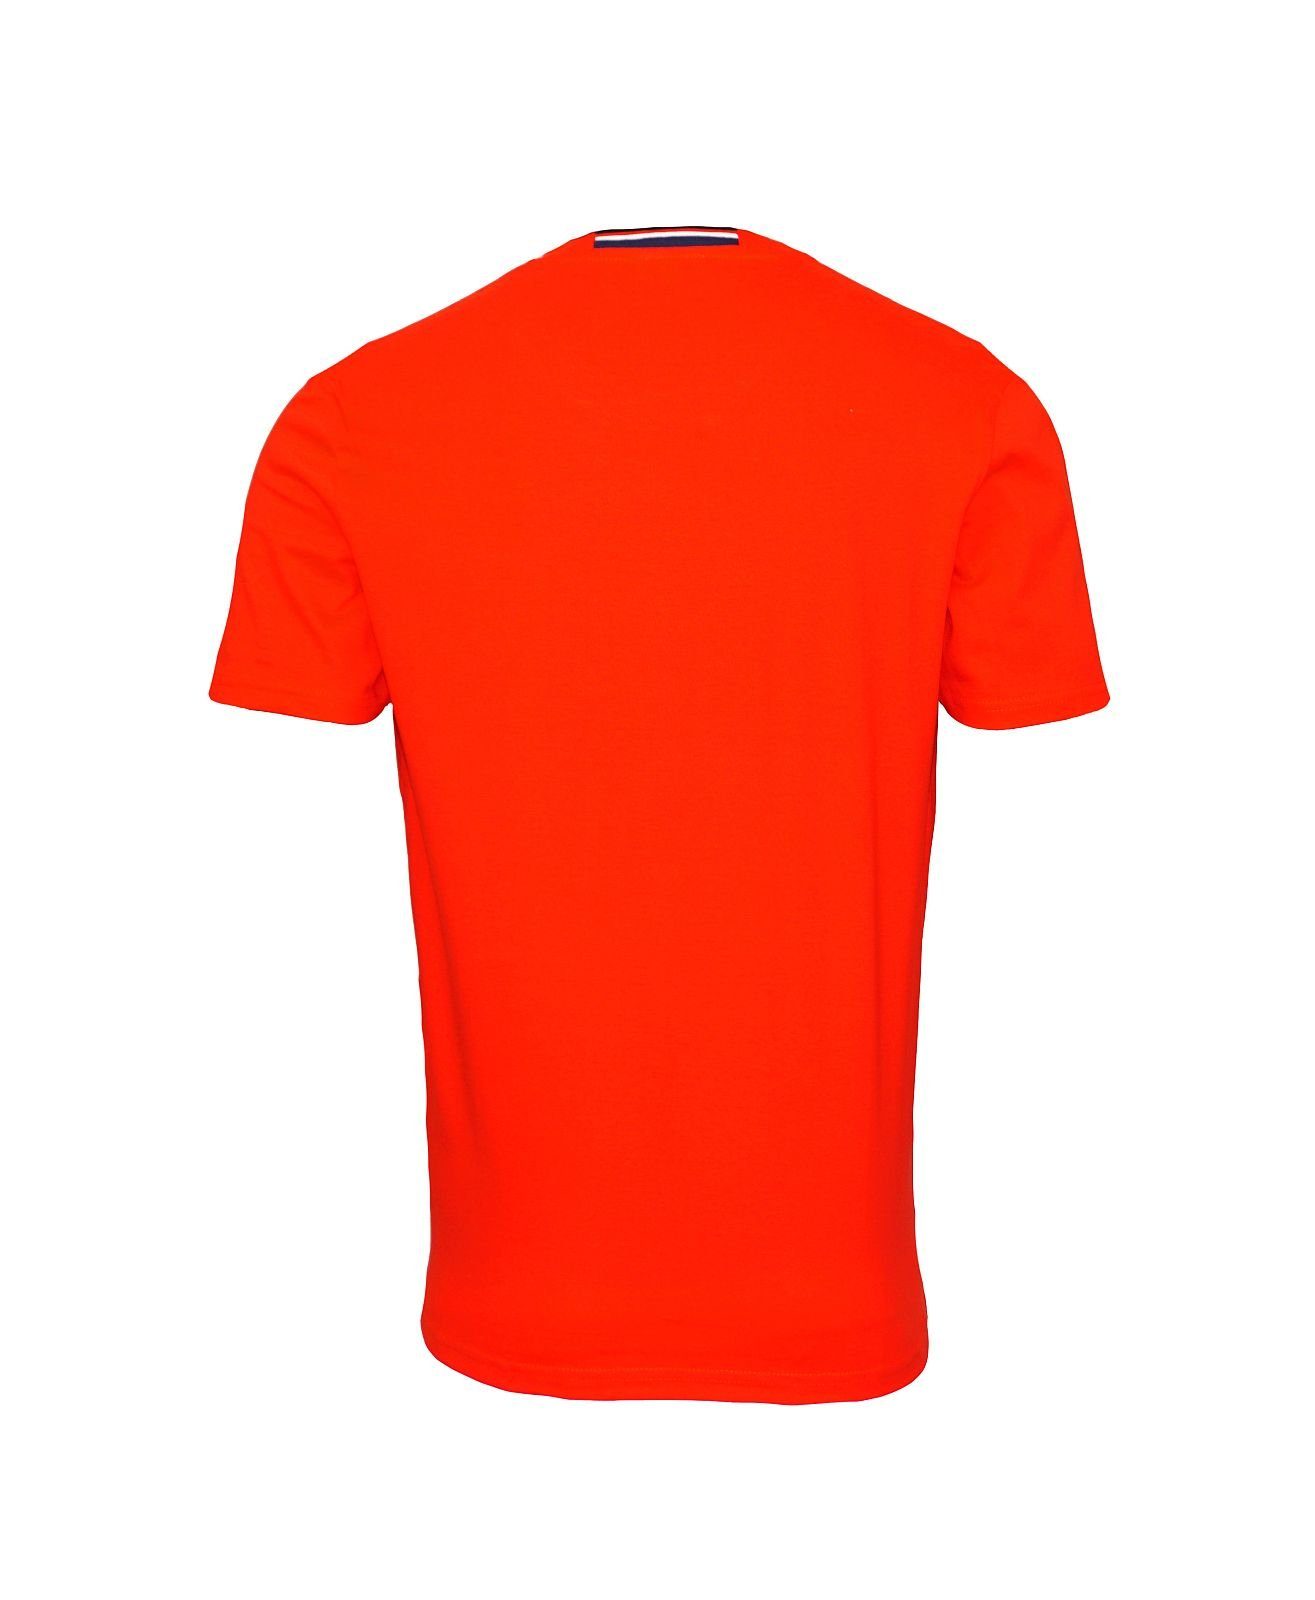 T-Shirt T-Shirt rot Shirt Assn Polo Kurzarmshirt Shortsleeve Rundhals U.S.